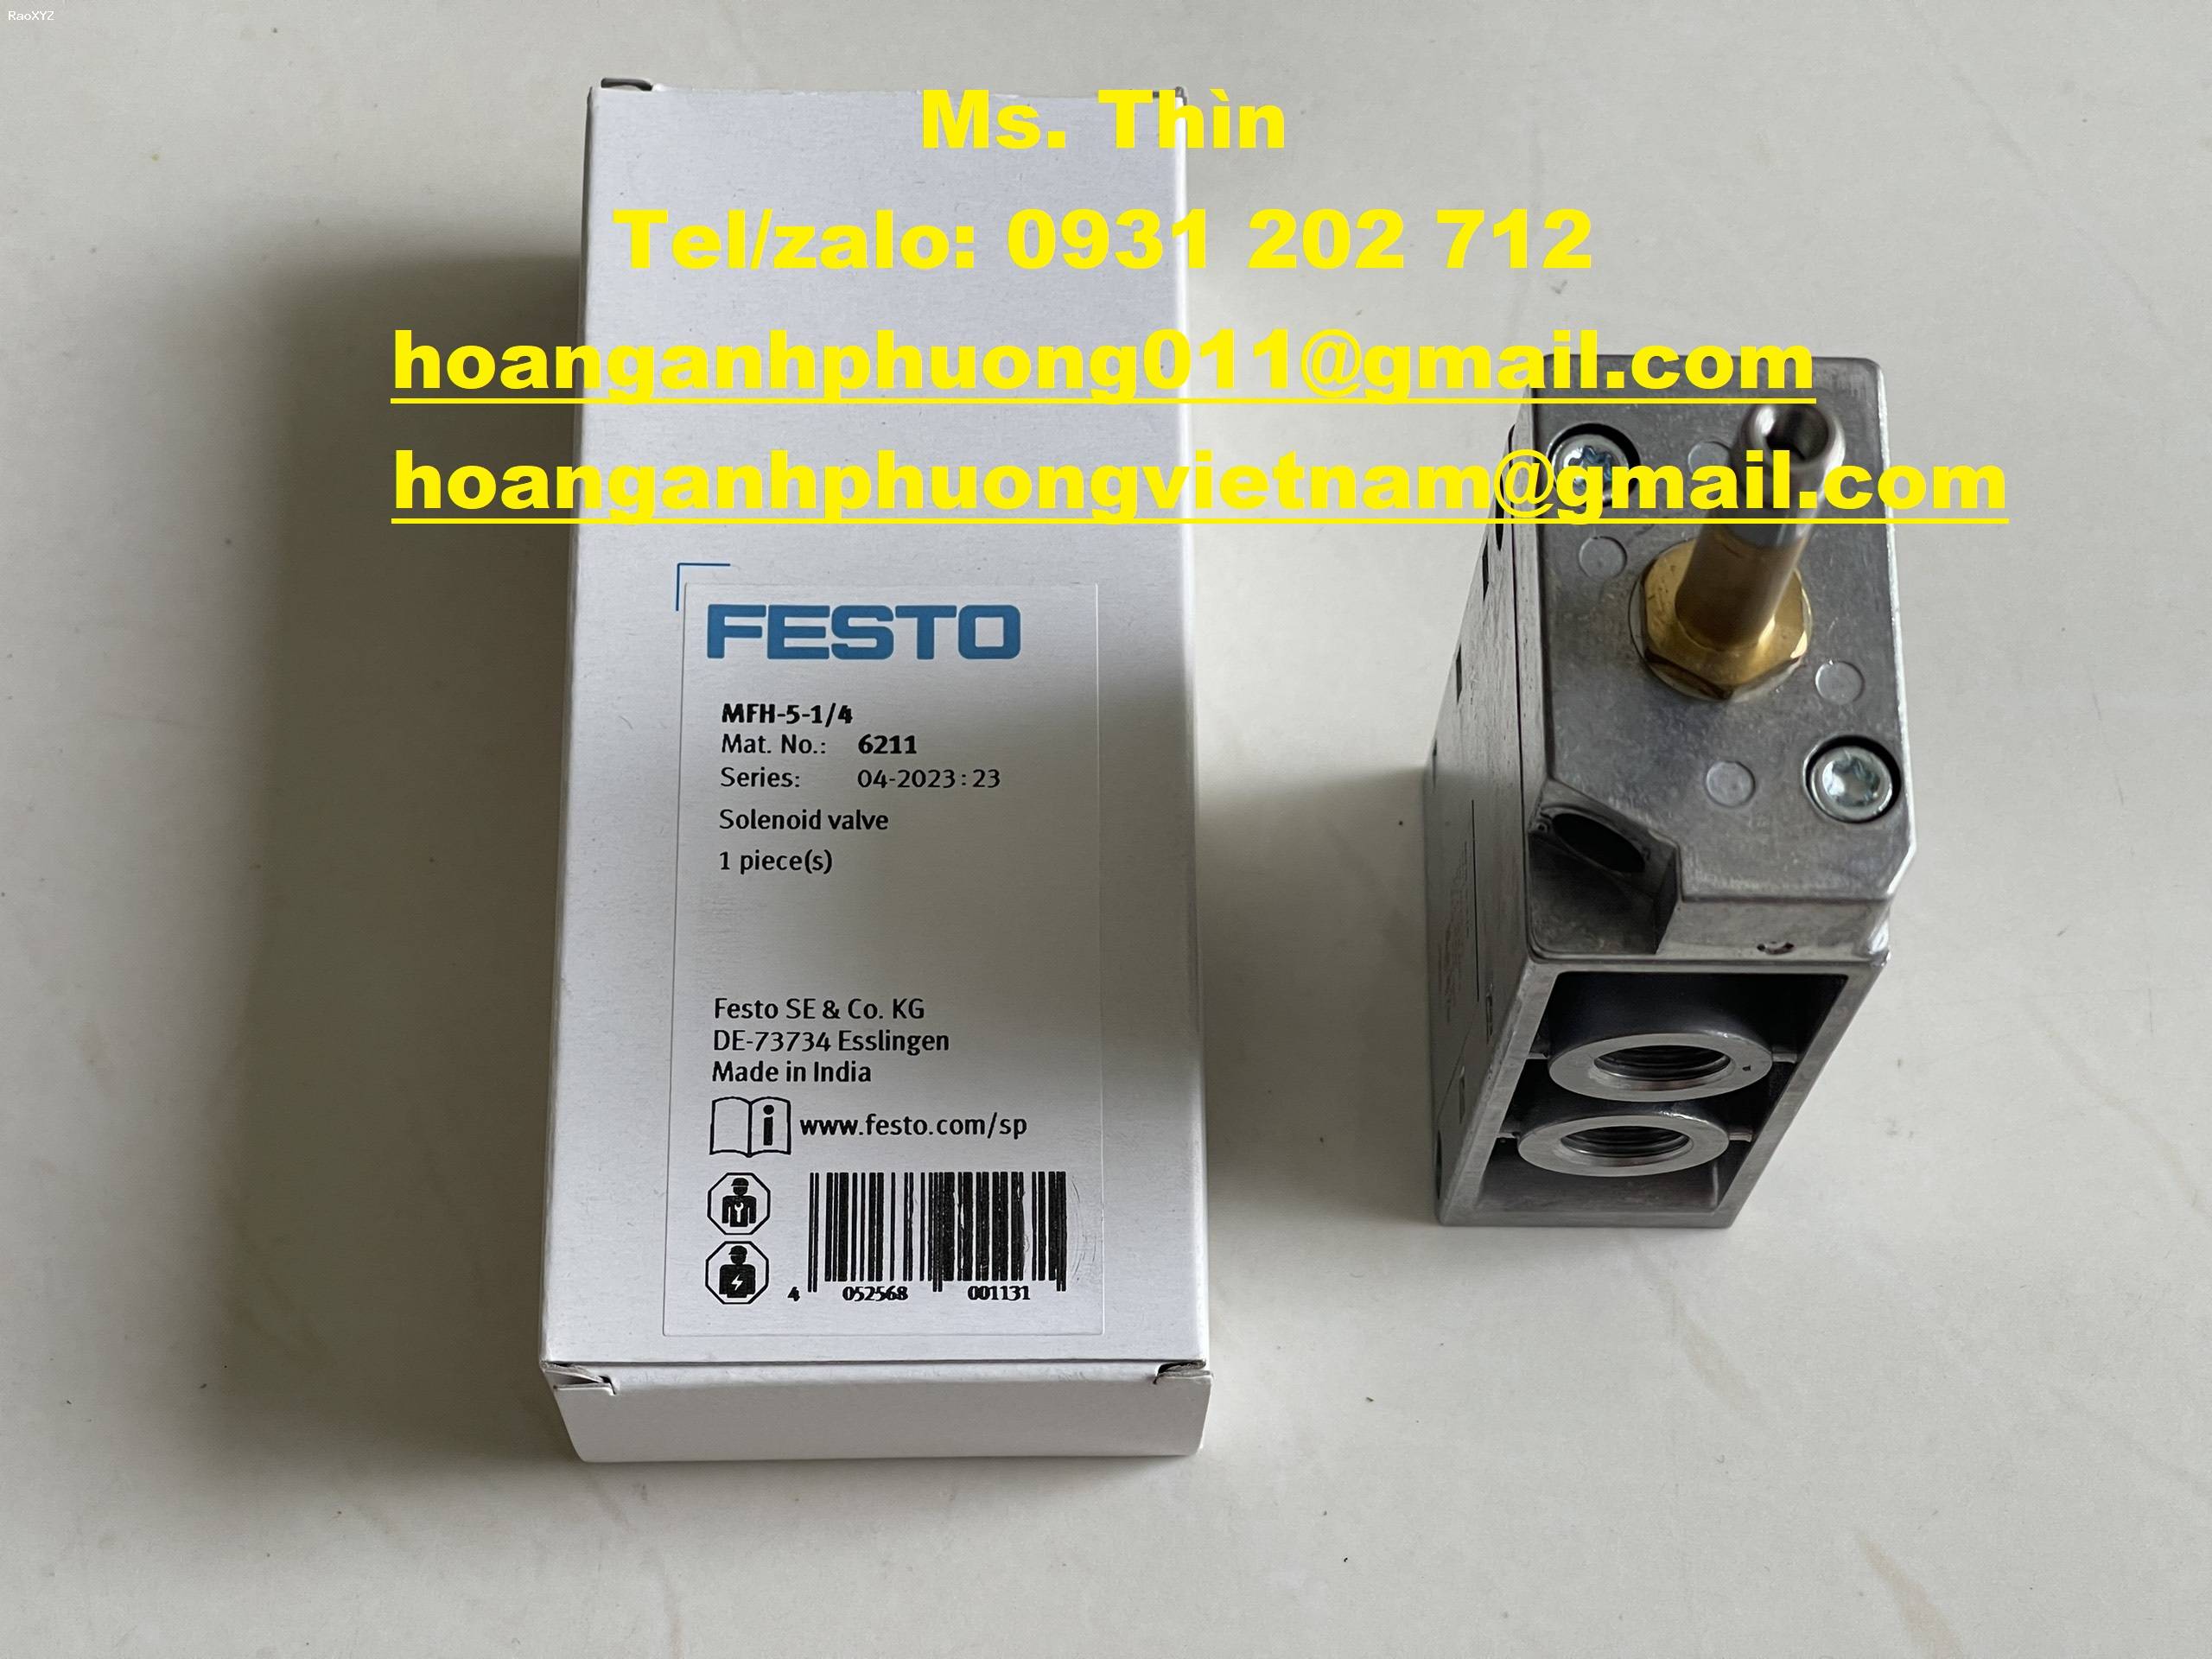 Van MFH-5-1/4 | Festo | hàng chính hãng | giá tốt | new 100%